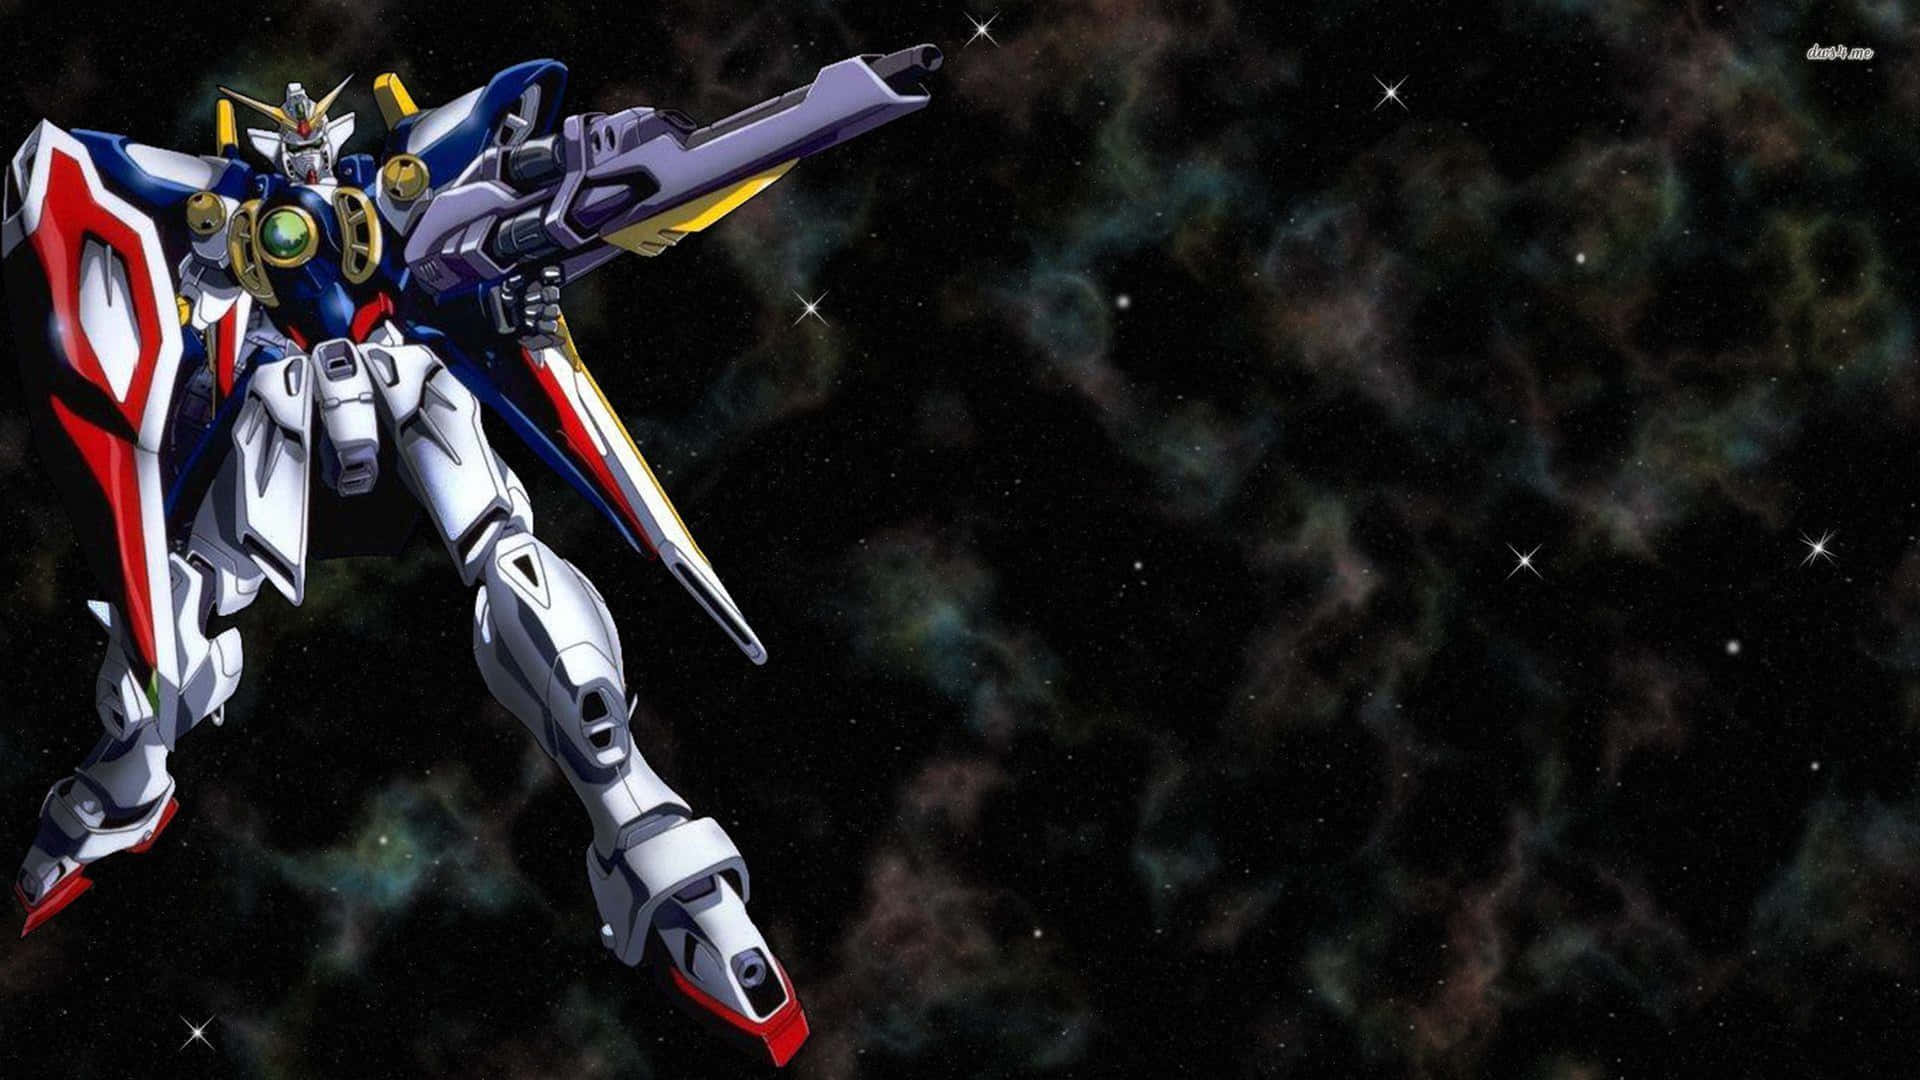 Enintrikat Gundam-skulptur Står I En Frodig Japansk Trädgård. Wallpaper